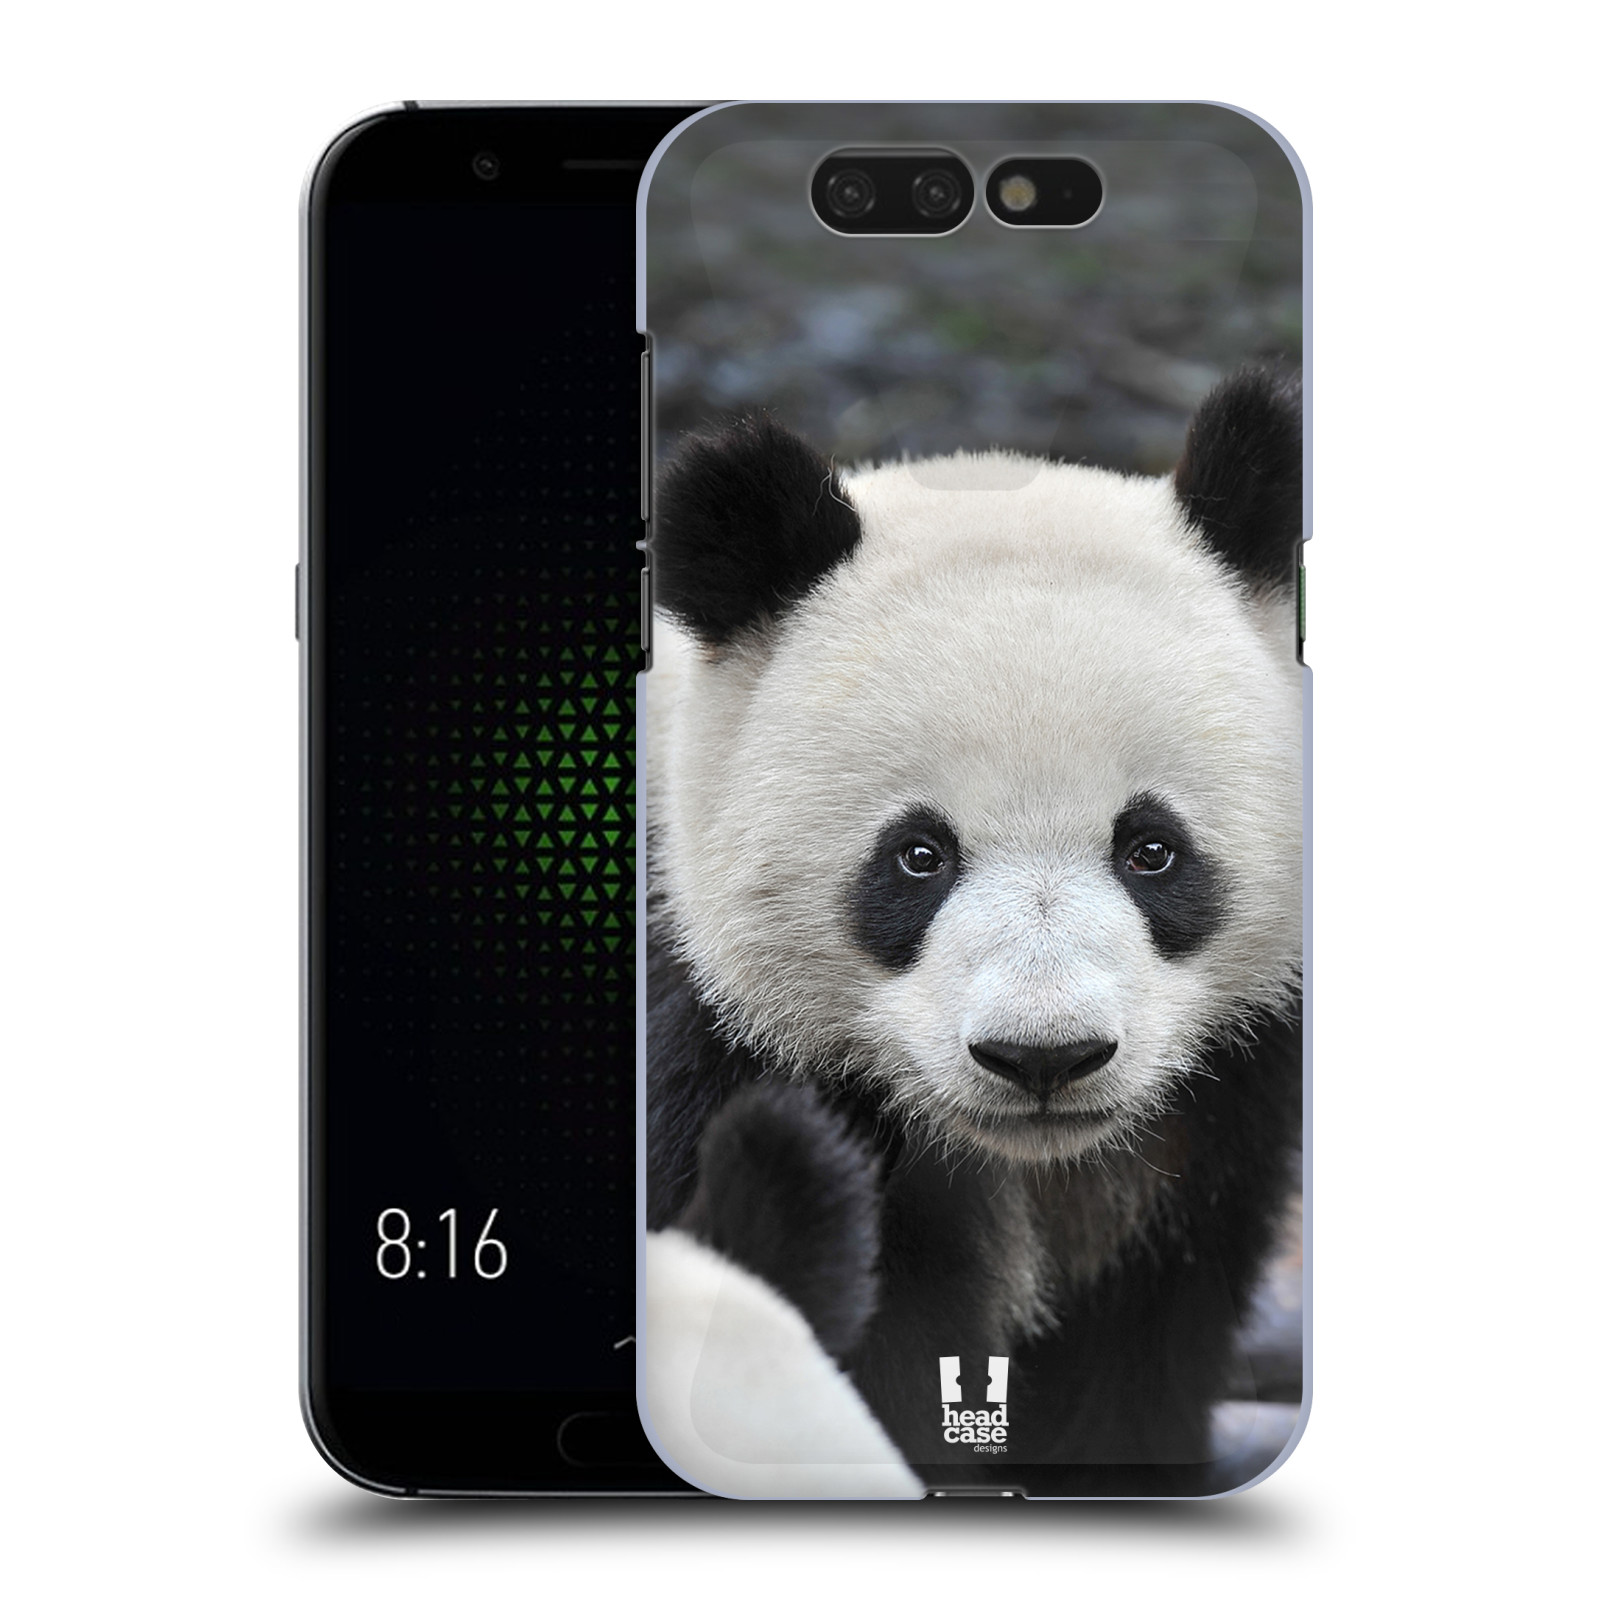 Zadní obal pro mobil Xiaomi Black Shark - HEAD CASE - Svět zvířat medvěd panda